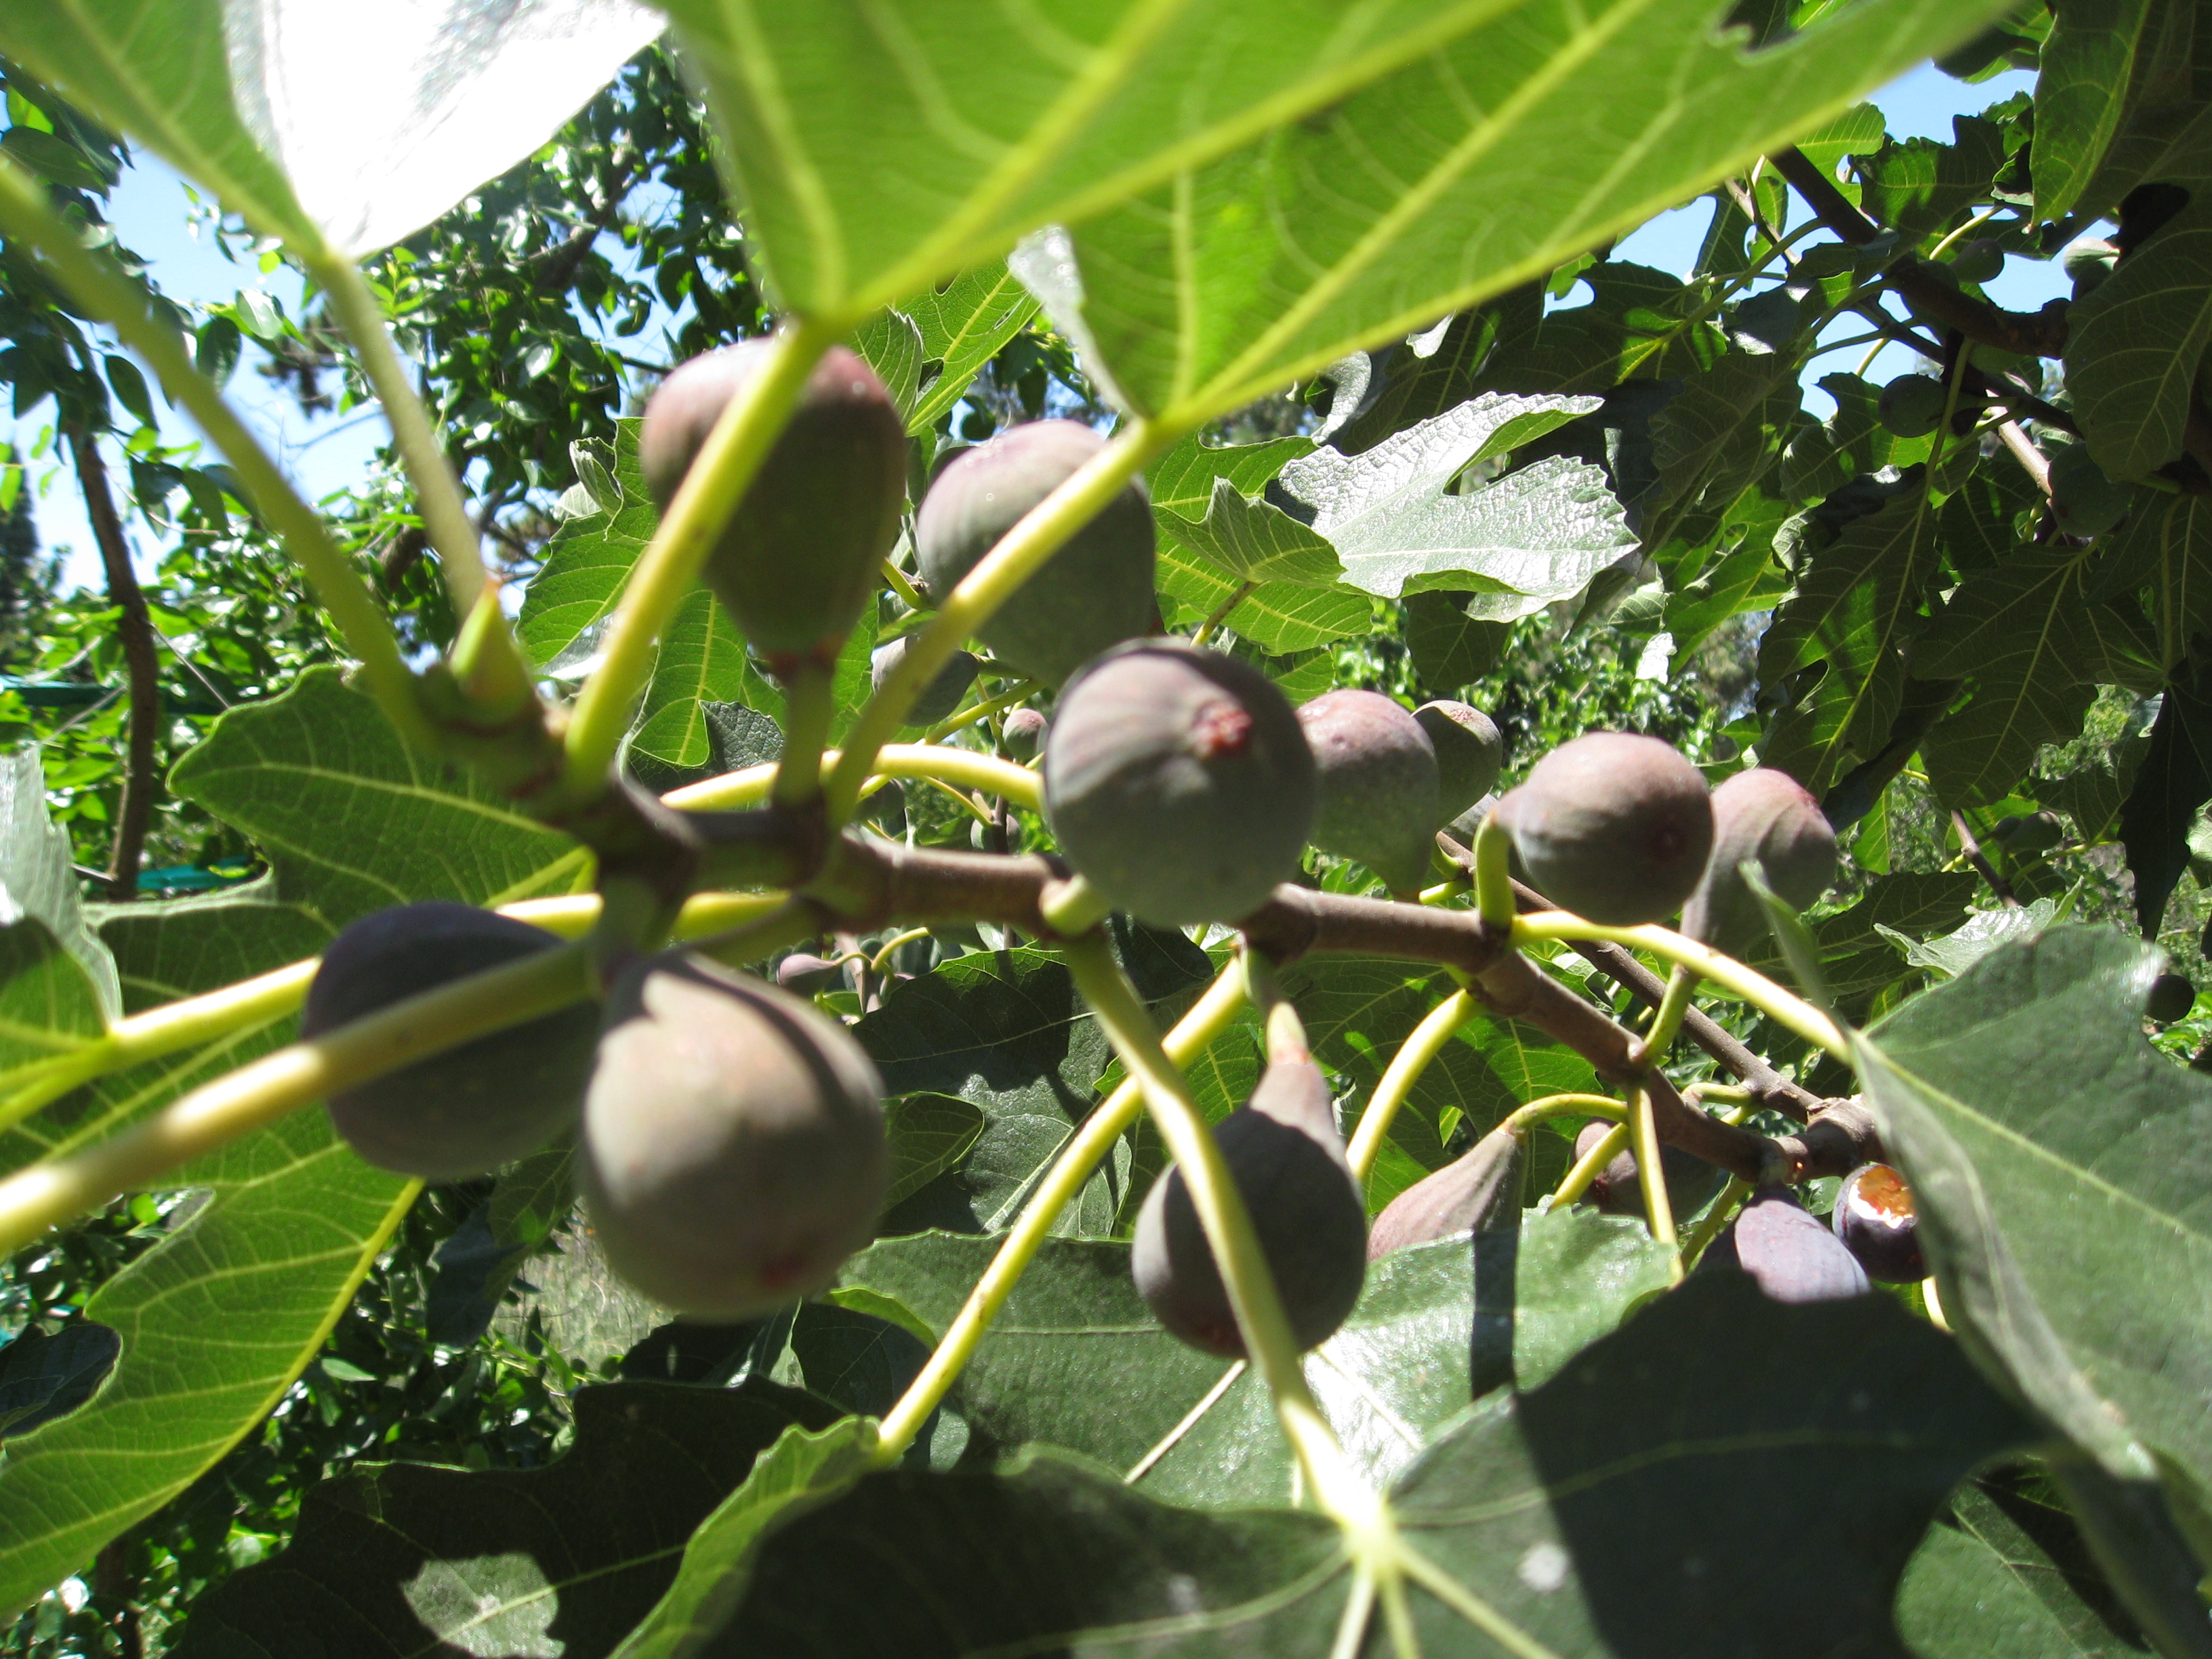 Violette de Bordeaux figs